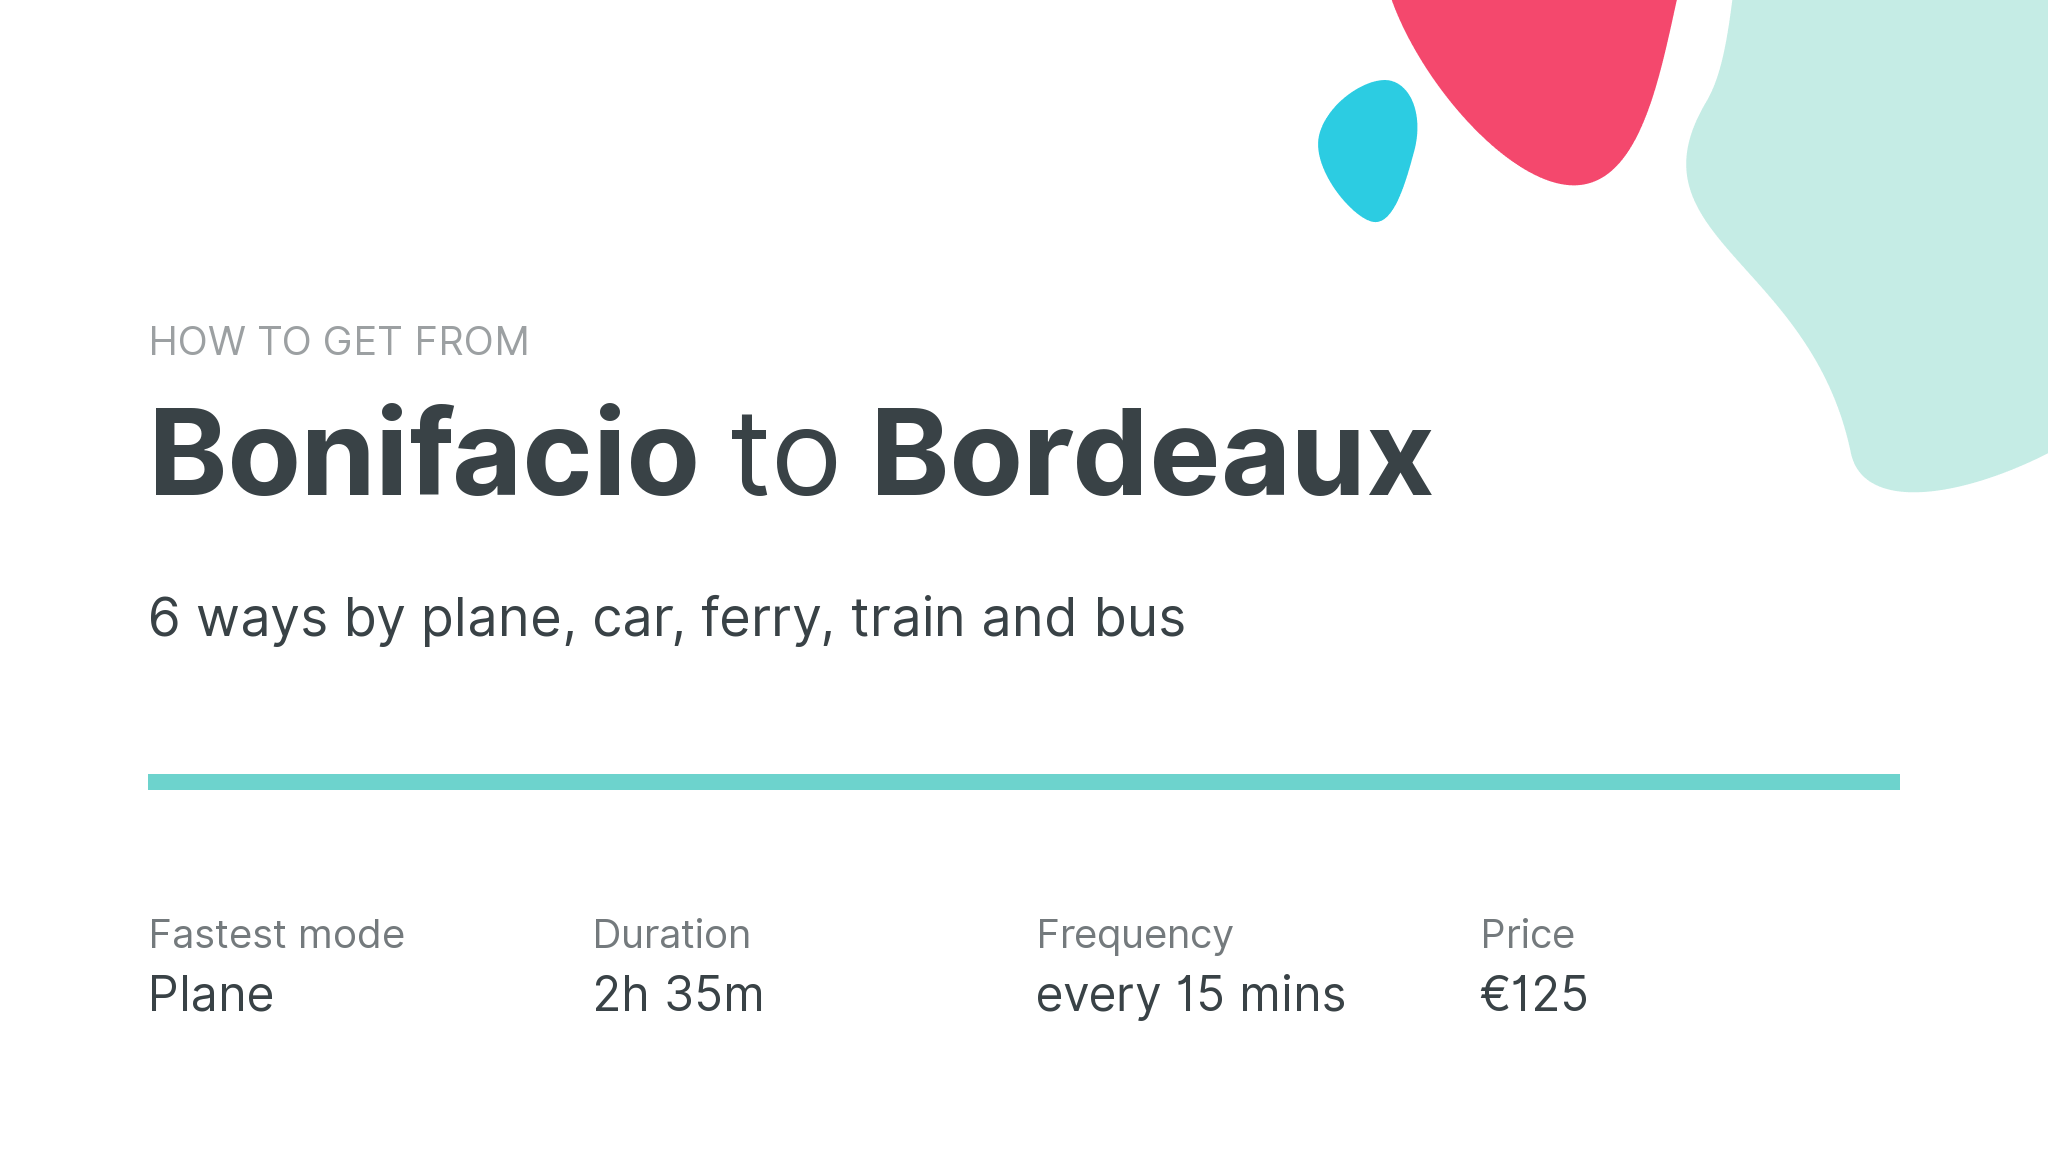 How do I get from Bonifacio to Bordeaux